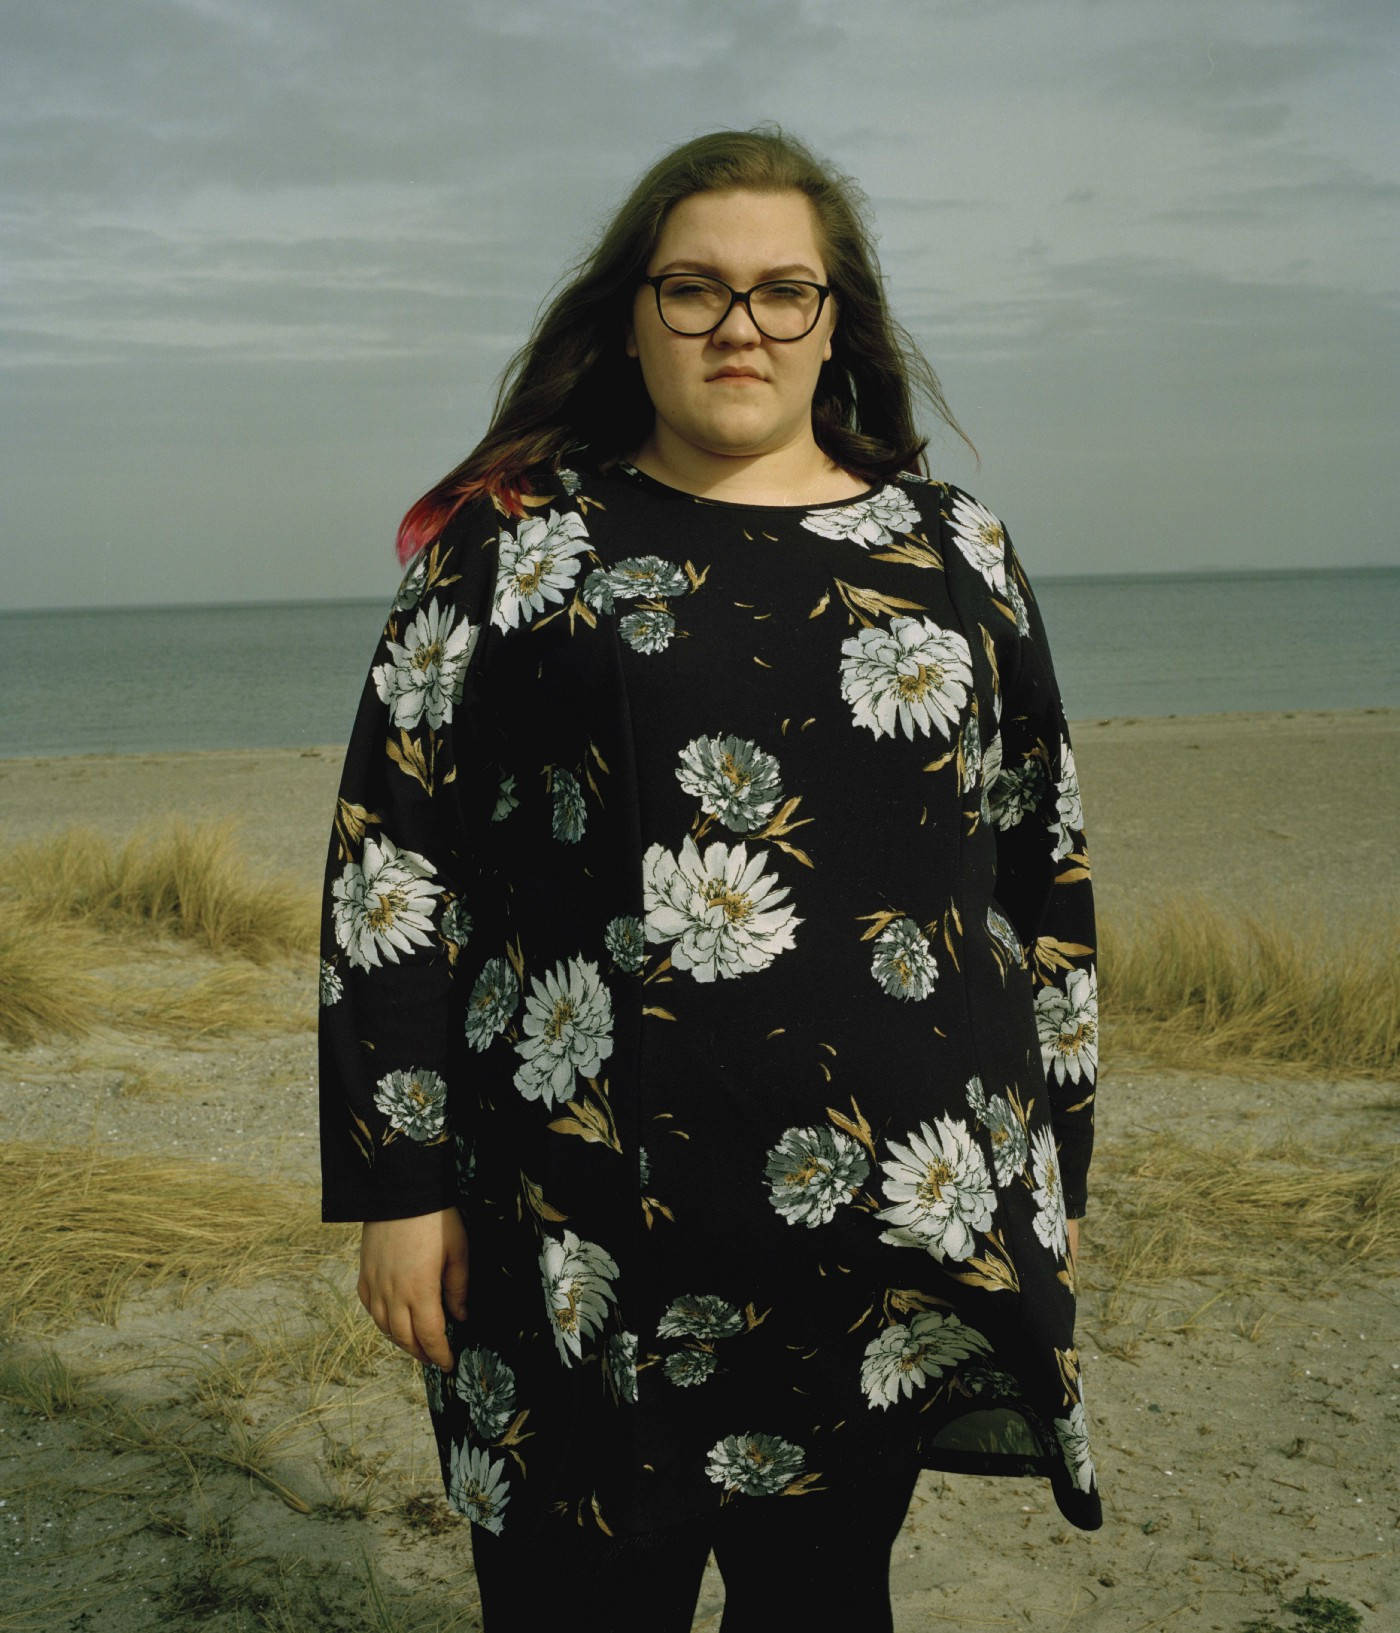 Fat Person Floral Dress Wallpaper